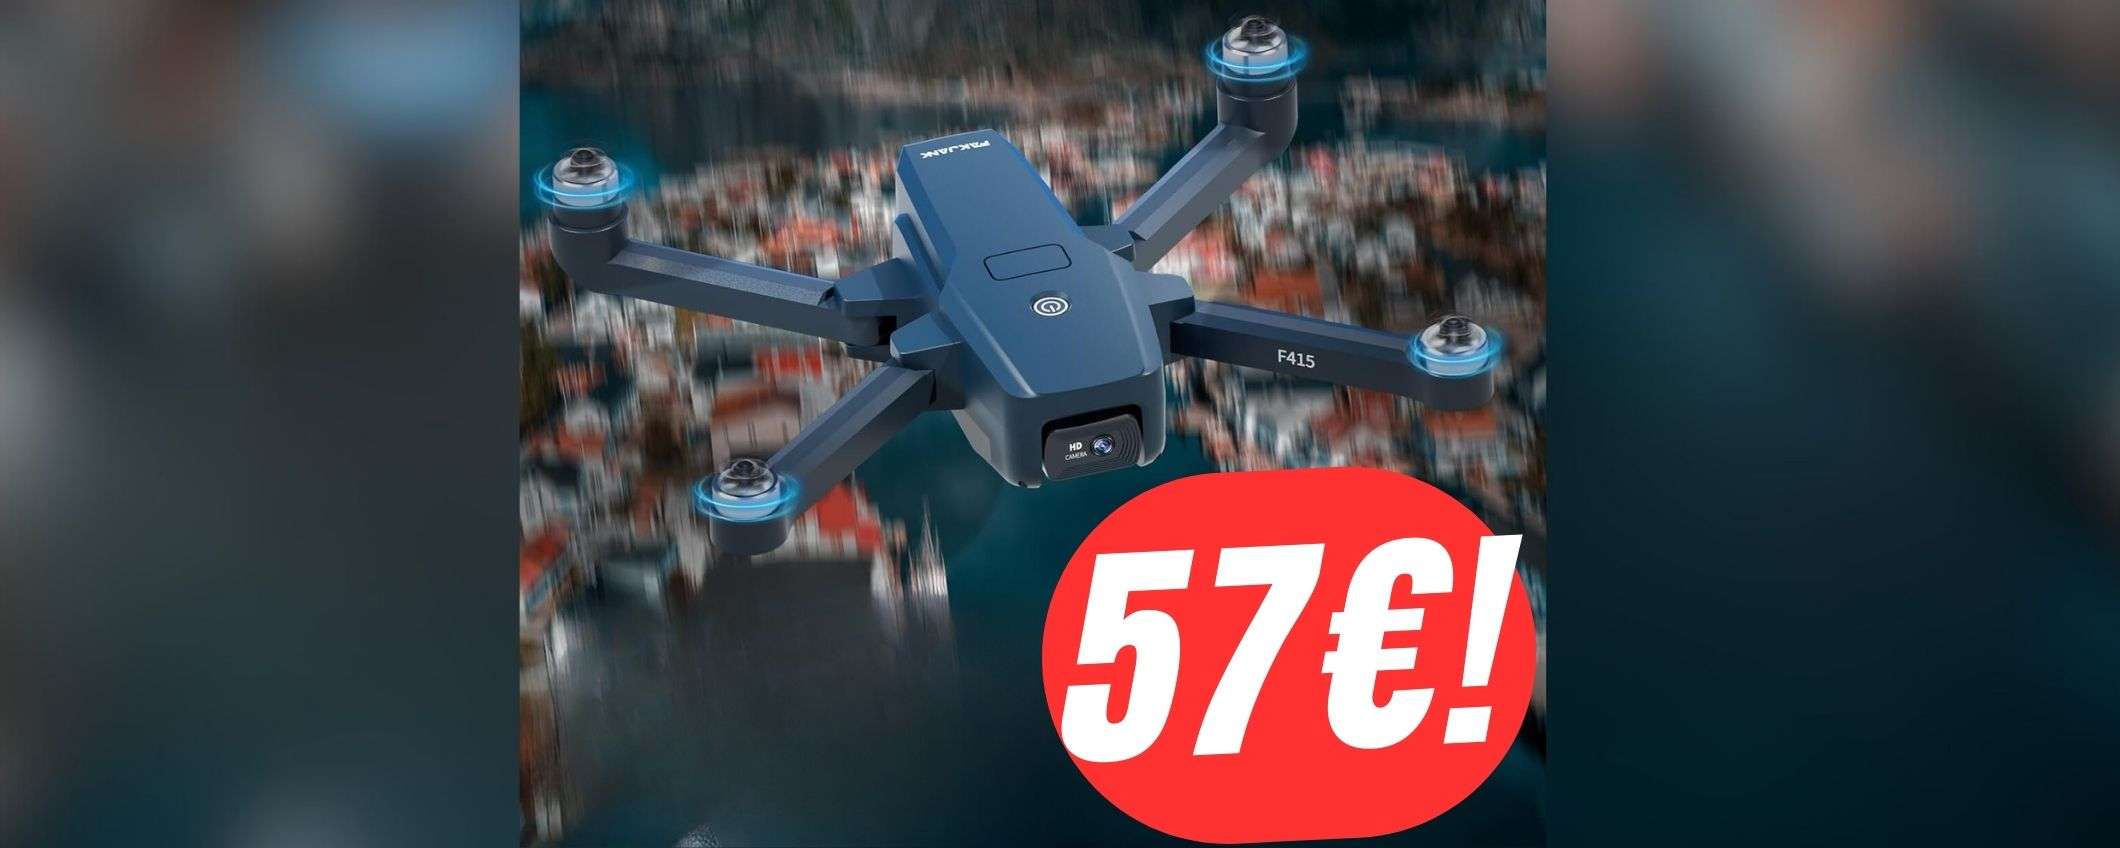 Vola con 57€ grazie al DRONE che crolla al MINIMO STORICO